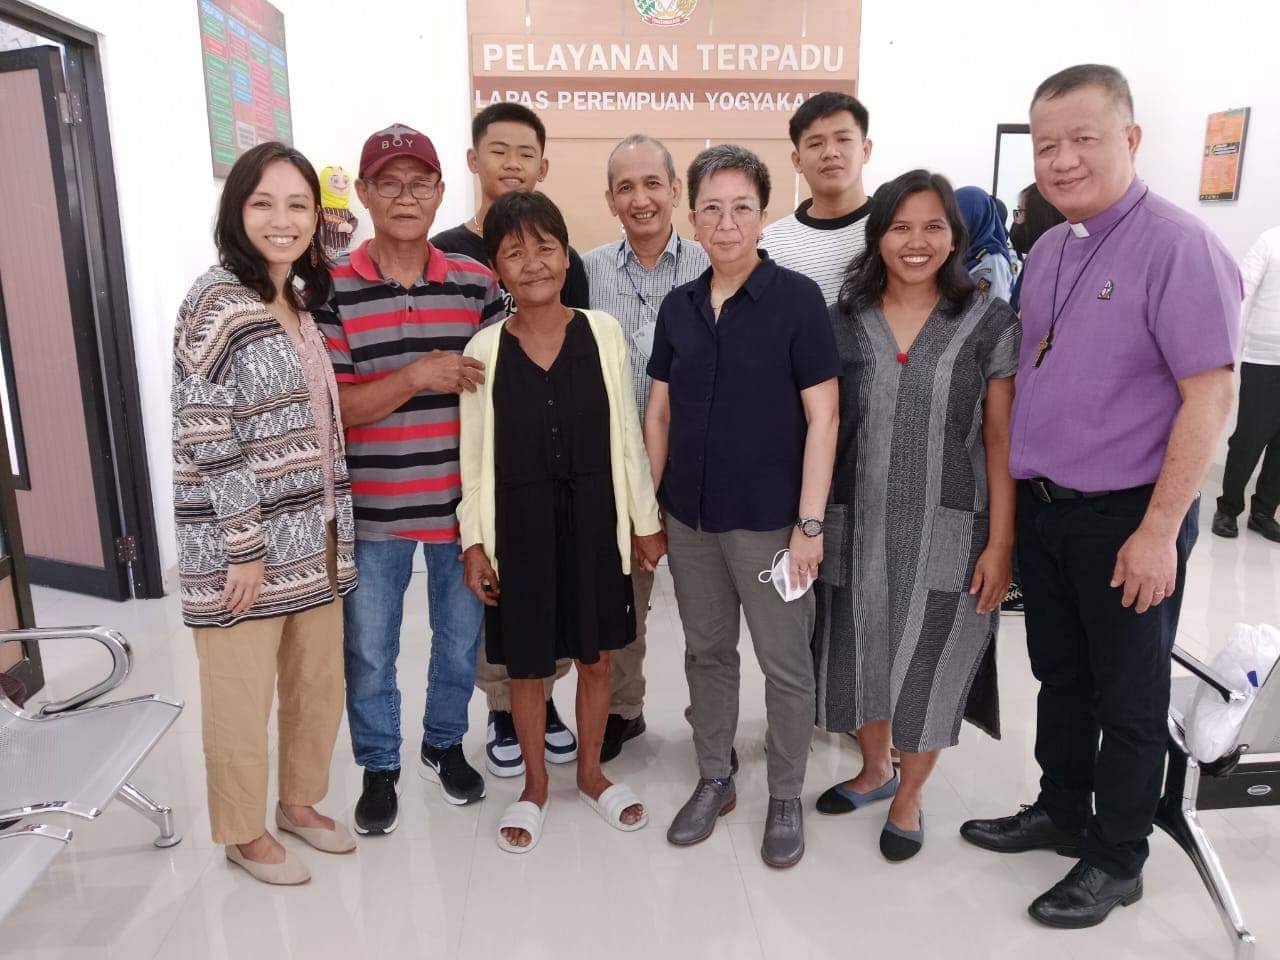 Mary Jane Veloso, binisita ng kaniyang pamilya sa Indonesia Radyo